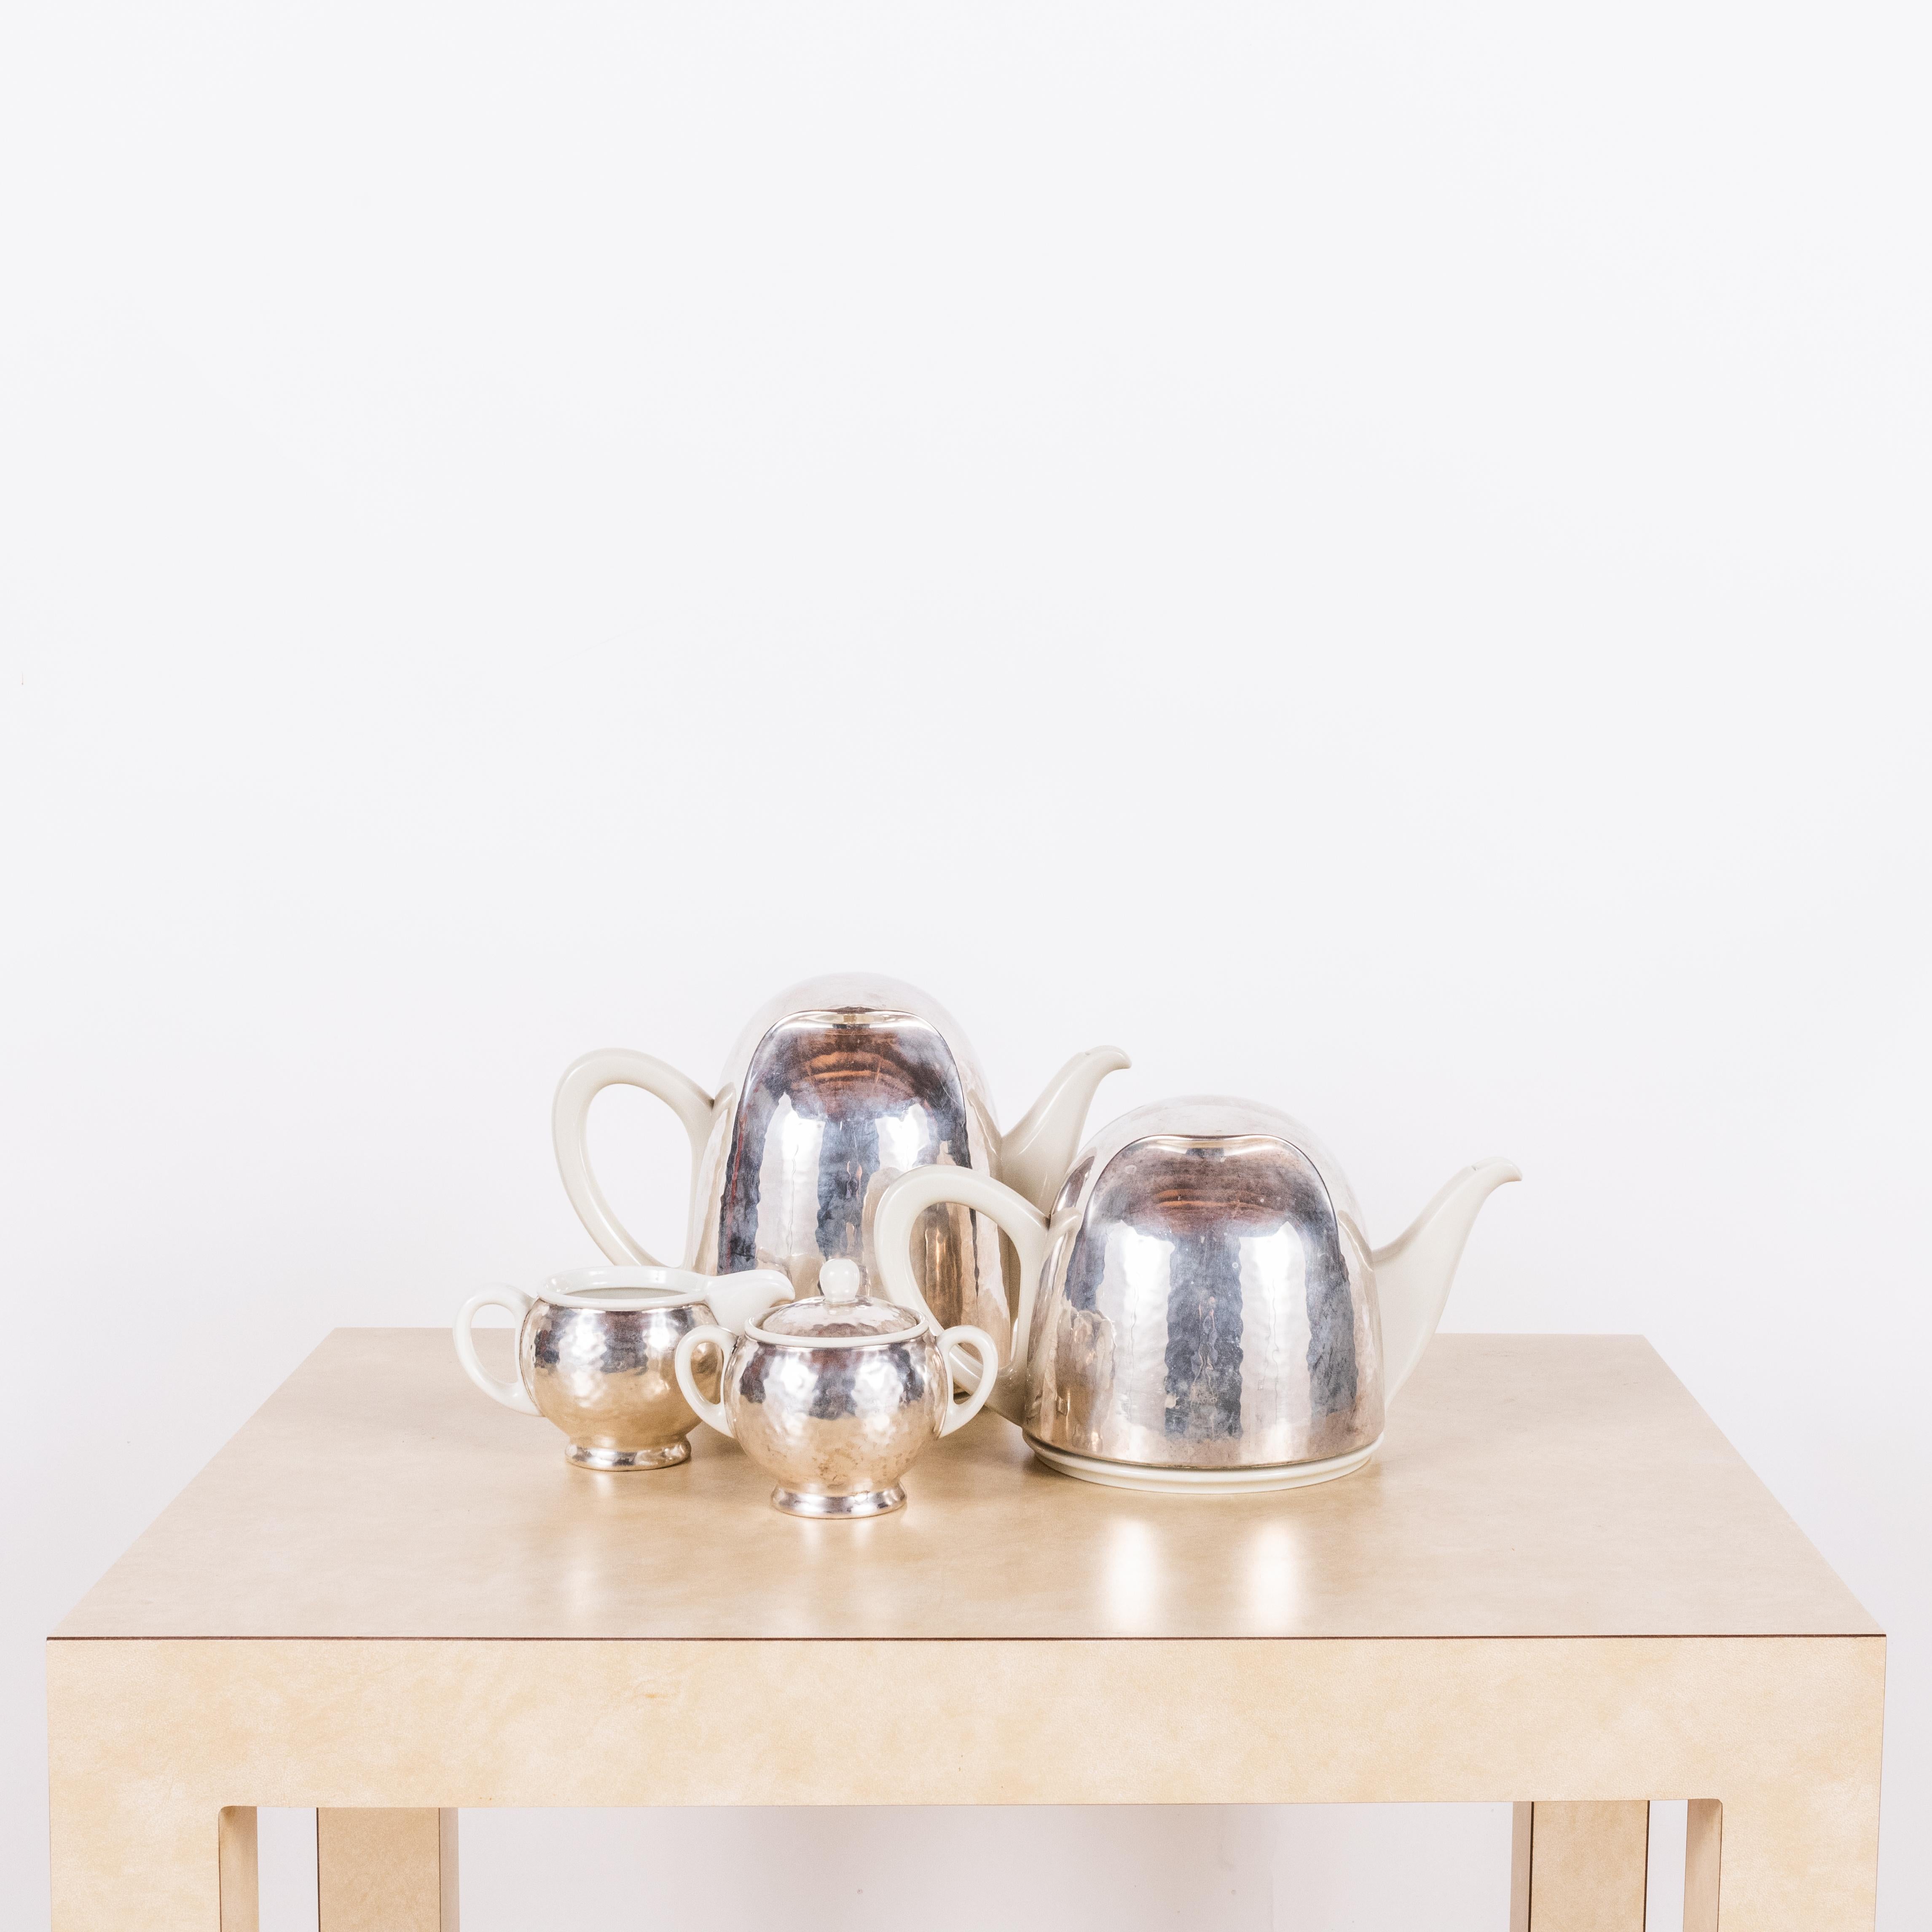 Bauhaus Hutschenreuther Selb (Bayern) Versilbertes Tee- und Kaffeegeschirr.

Unglaubliches Design: versilberte Wärmeisolatoren, die mit Filz ausgekleidet sind, der die Töpfe bedeckt.

Wird als Set verkauft.

Die angegebenen Maße beziehen sich auf